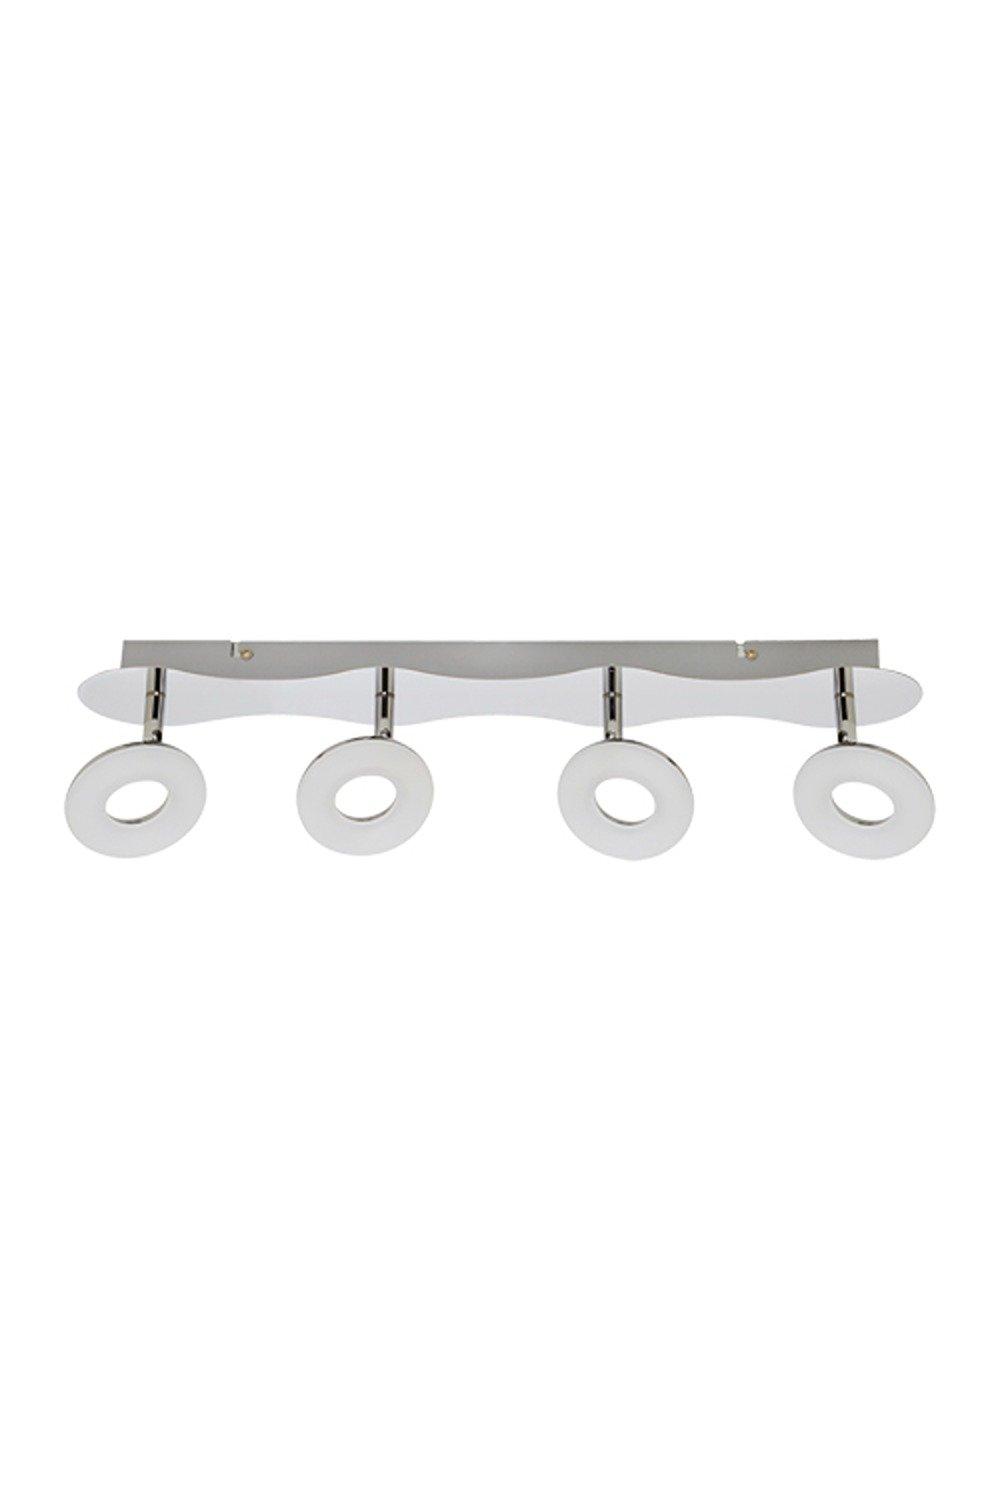 'Ava' Chrome Four Head Bar Adjustable Ceiling LED Spotlights